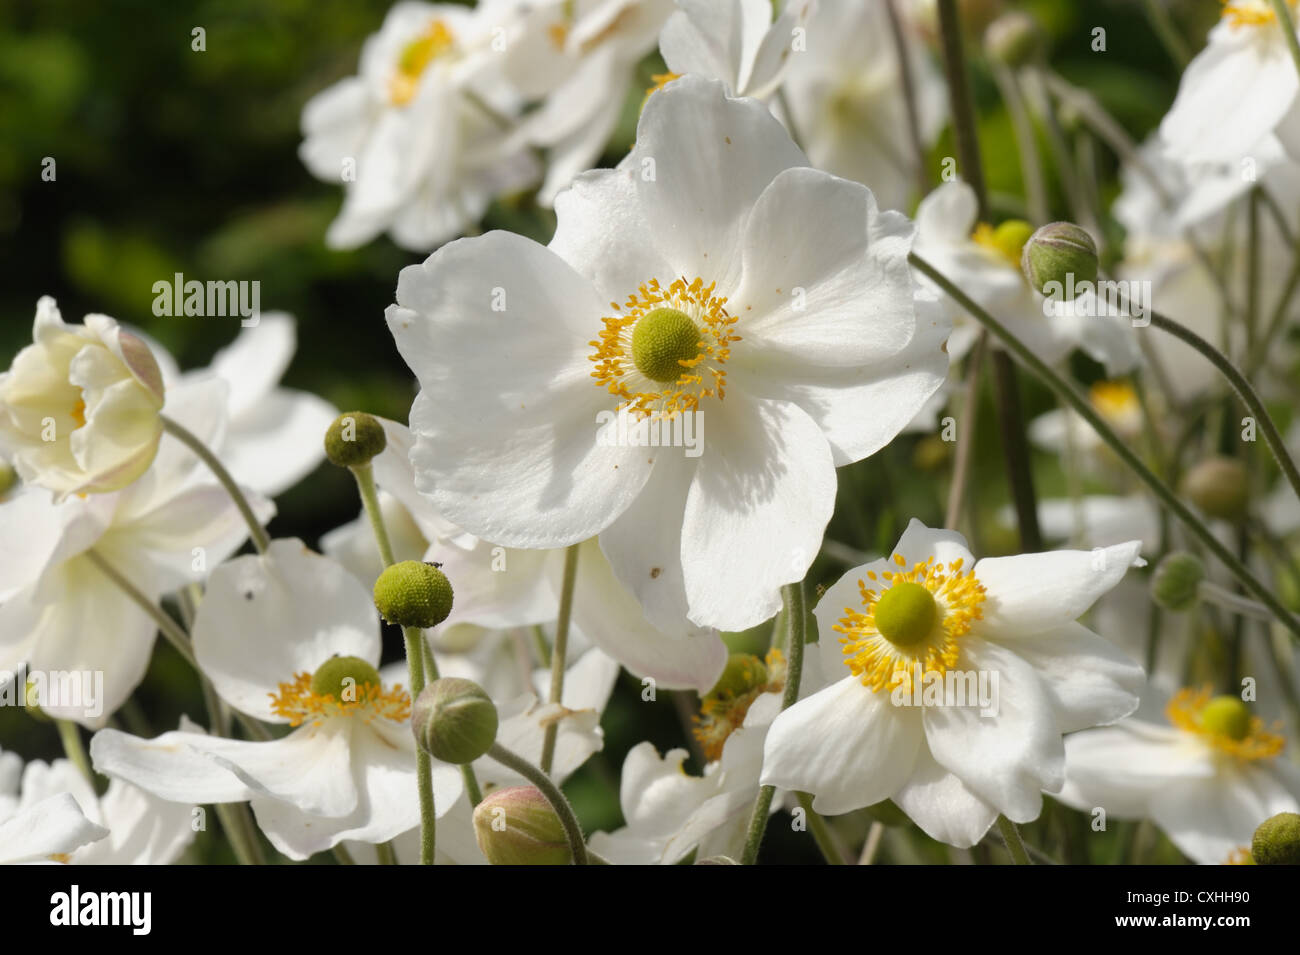 Anemone x hybrida 'Honorine Jobert' flowering plants Stock Photo